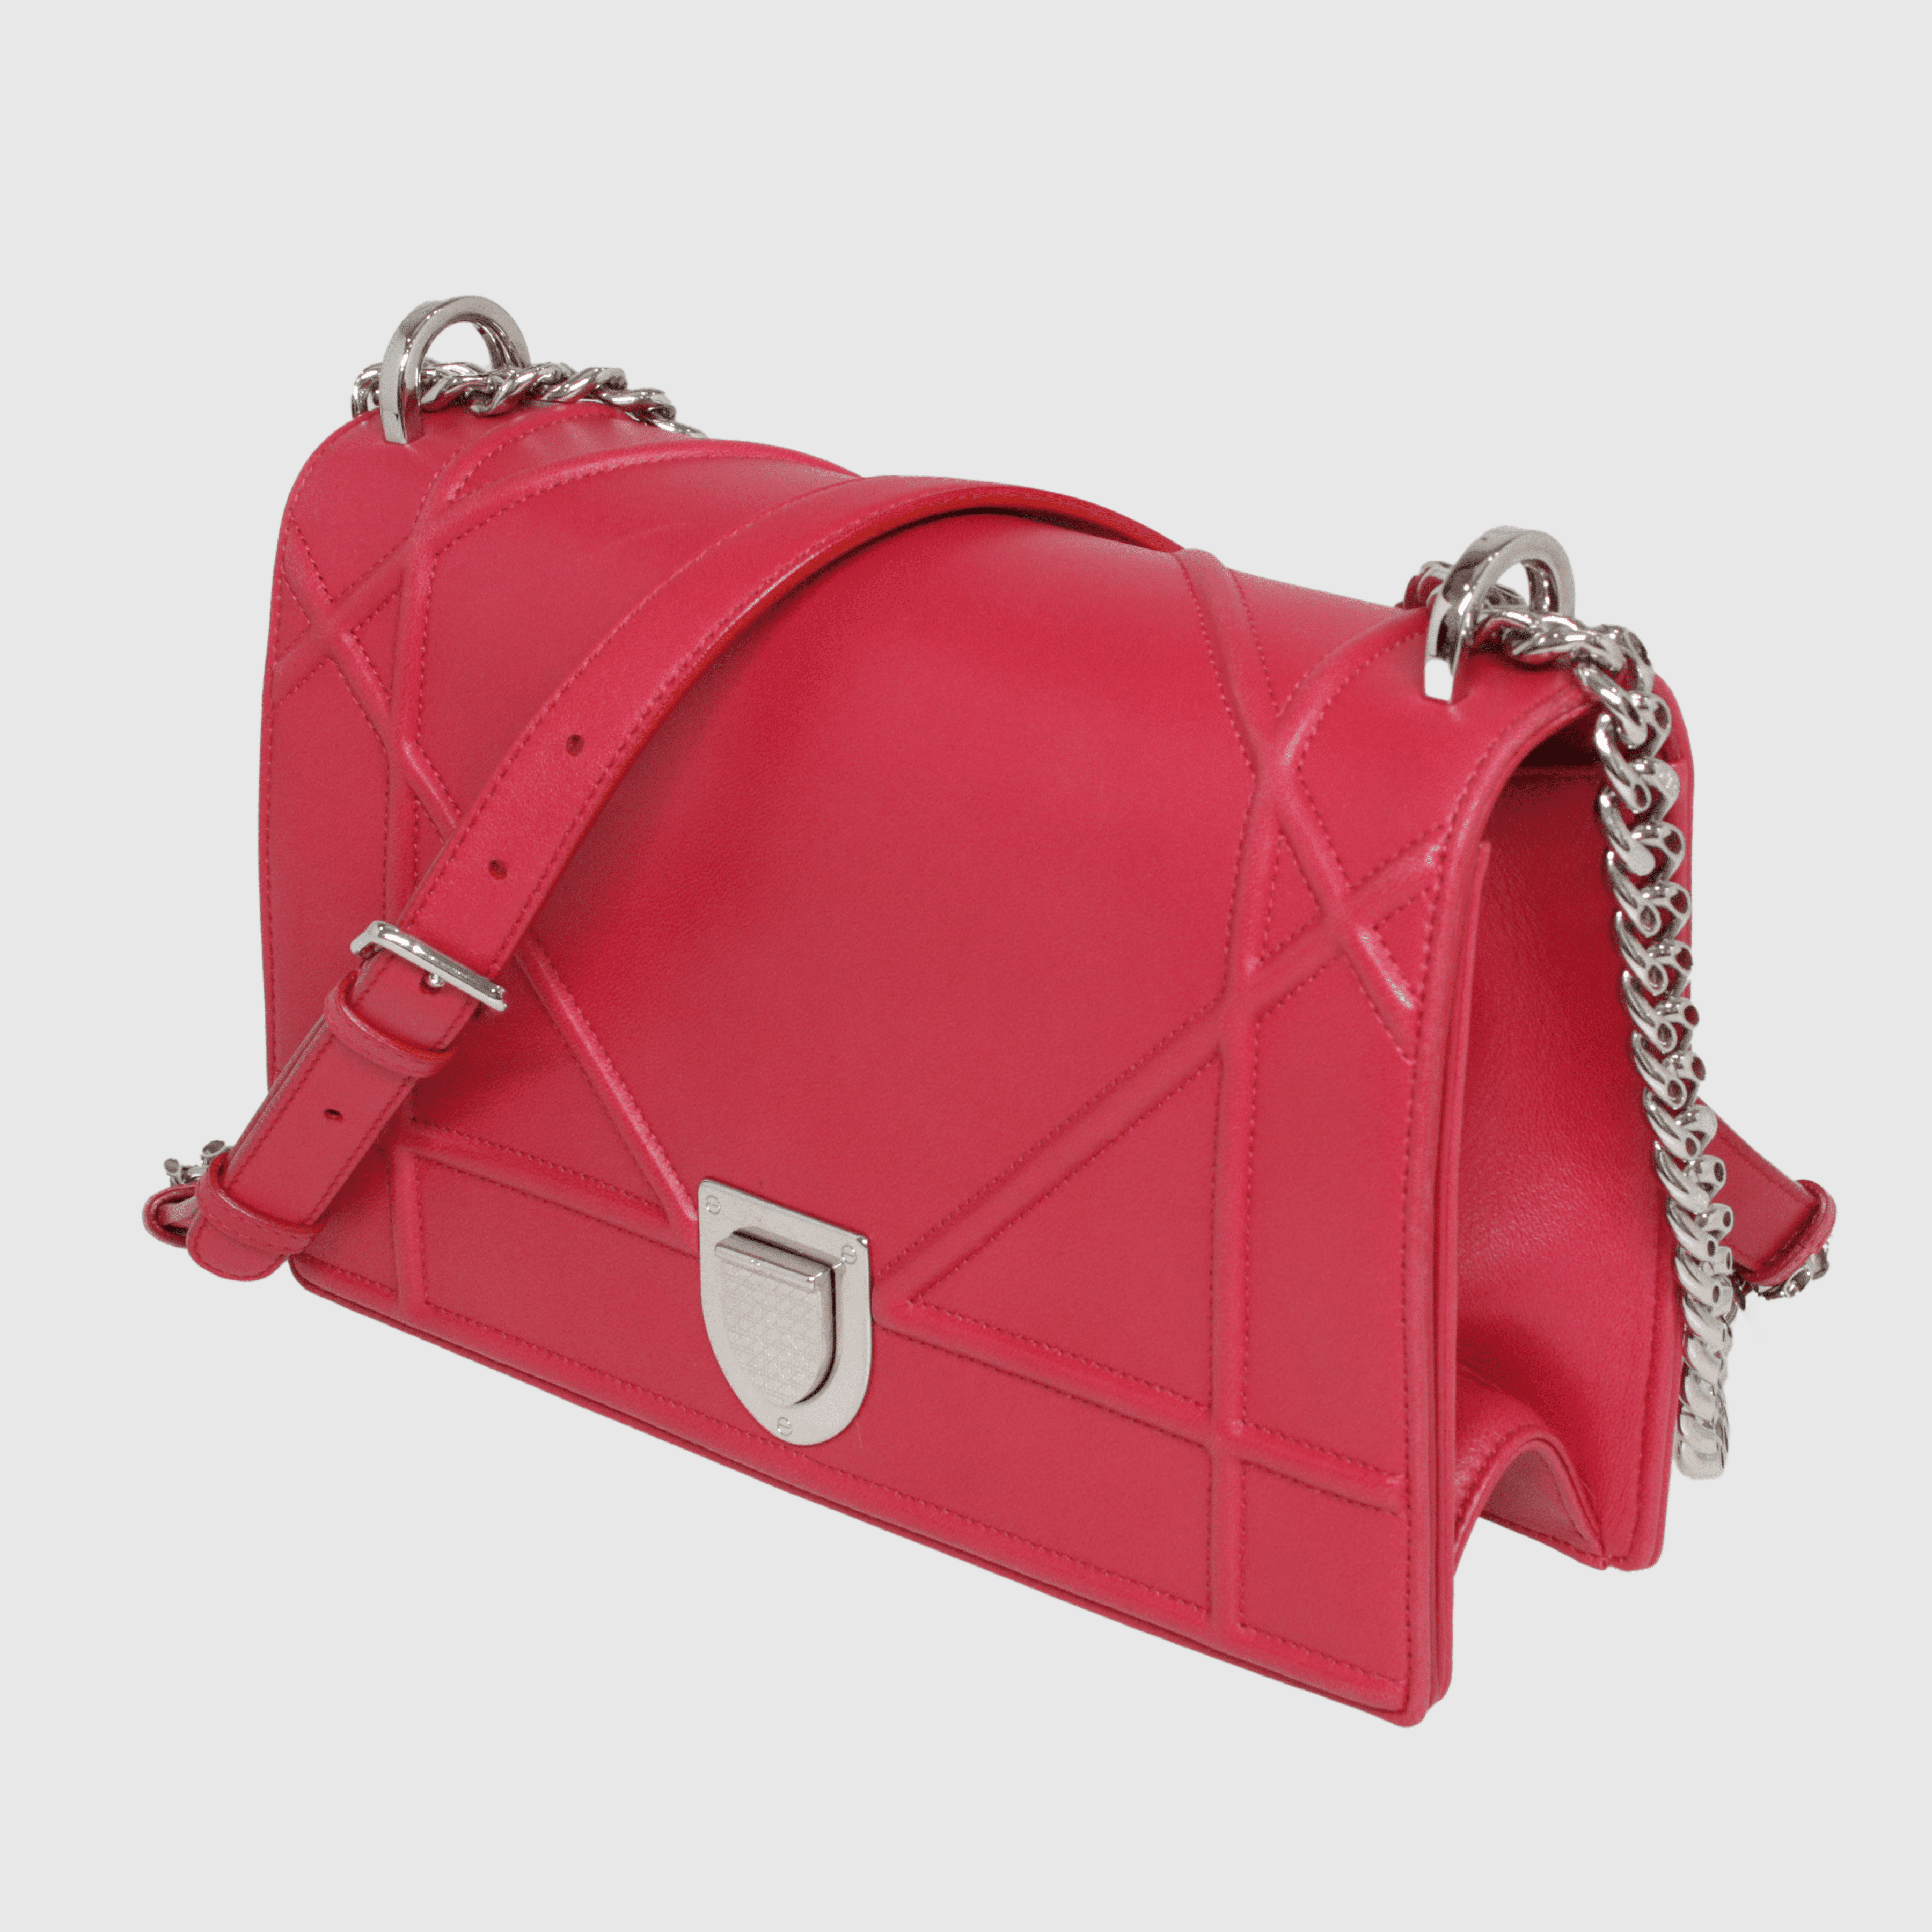 Pink Medium Diorama Flap Bag